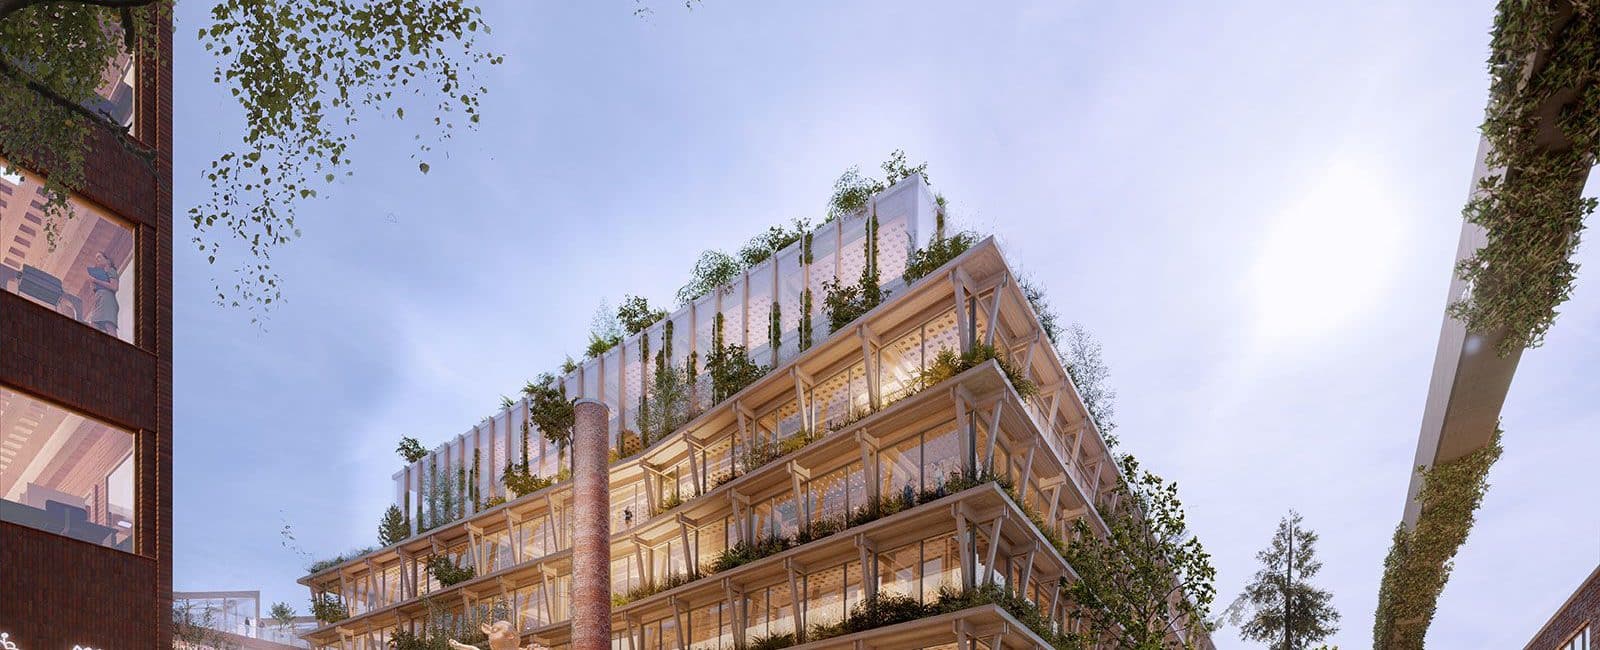 Imagem de uma construção em madeira com jardins verticais